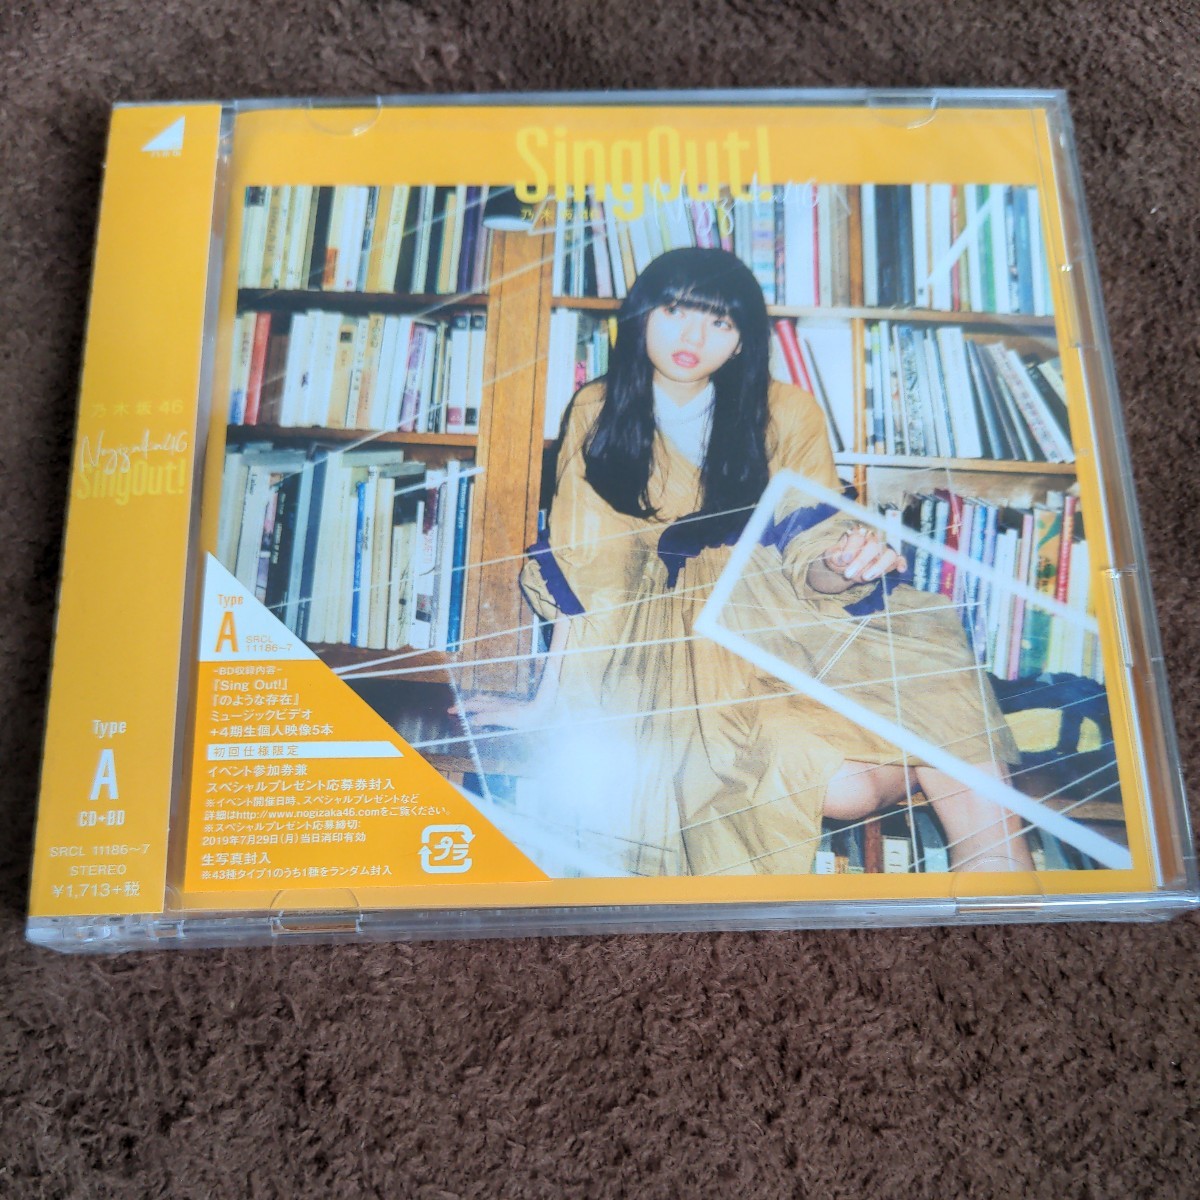 乃木坂46「SingOut!」CD+BD_画像1